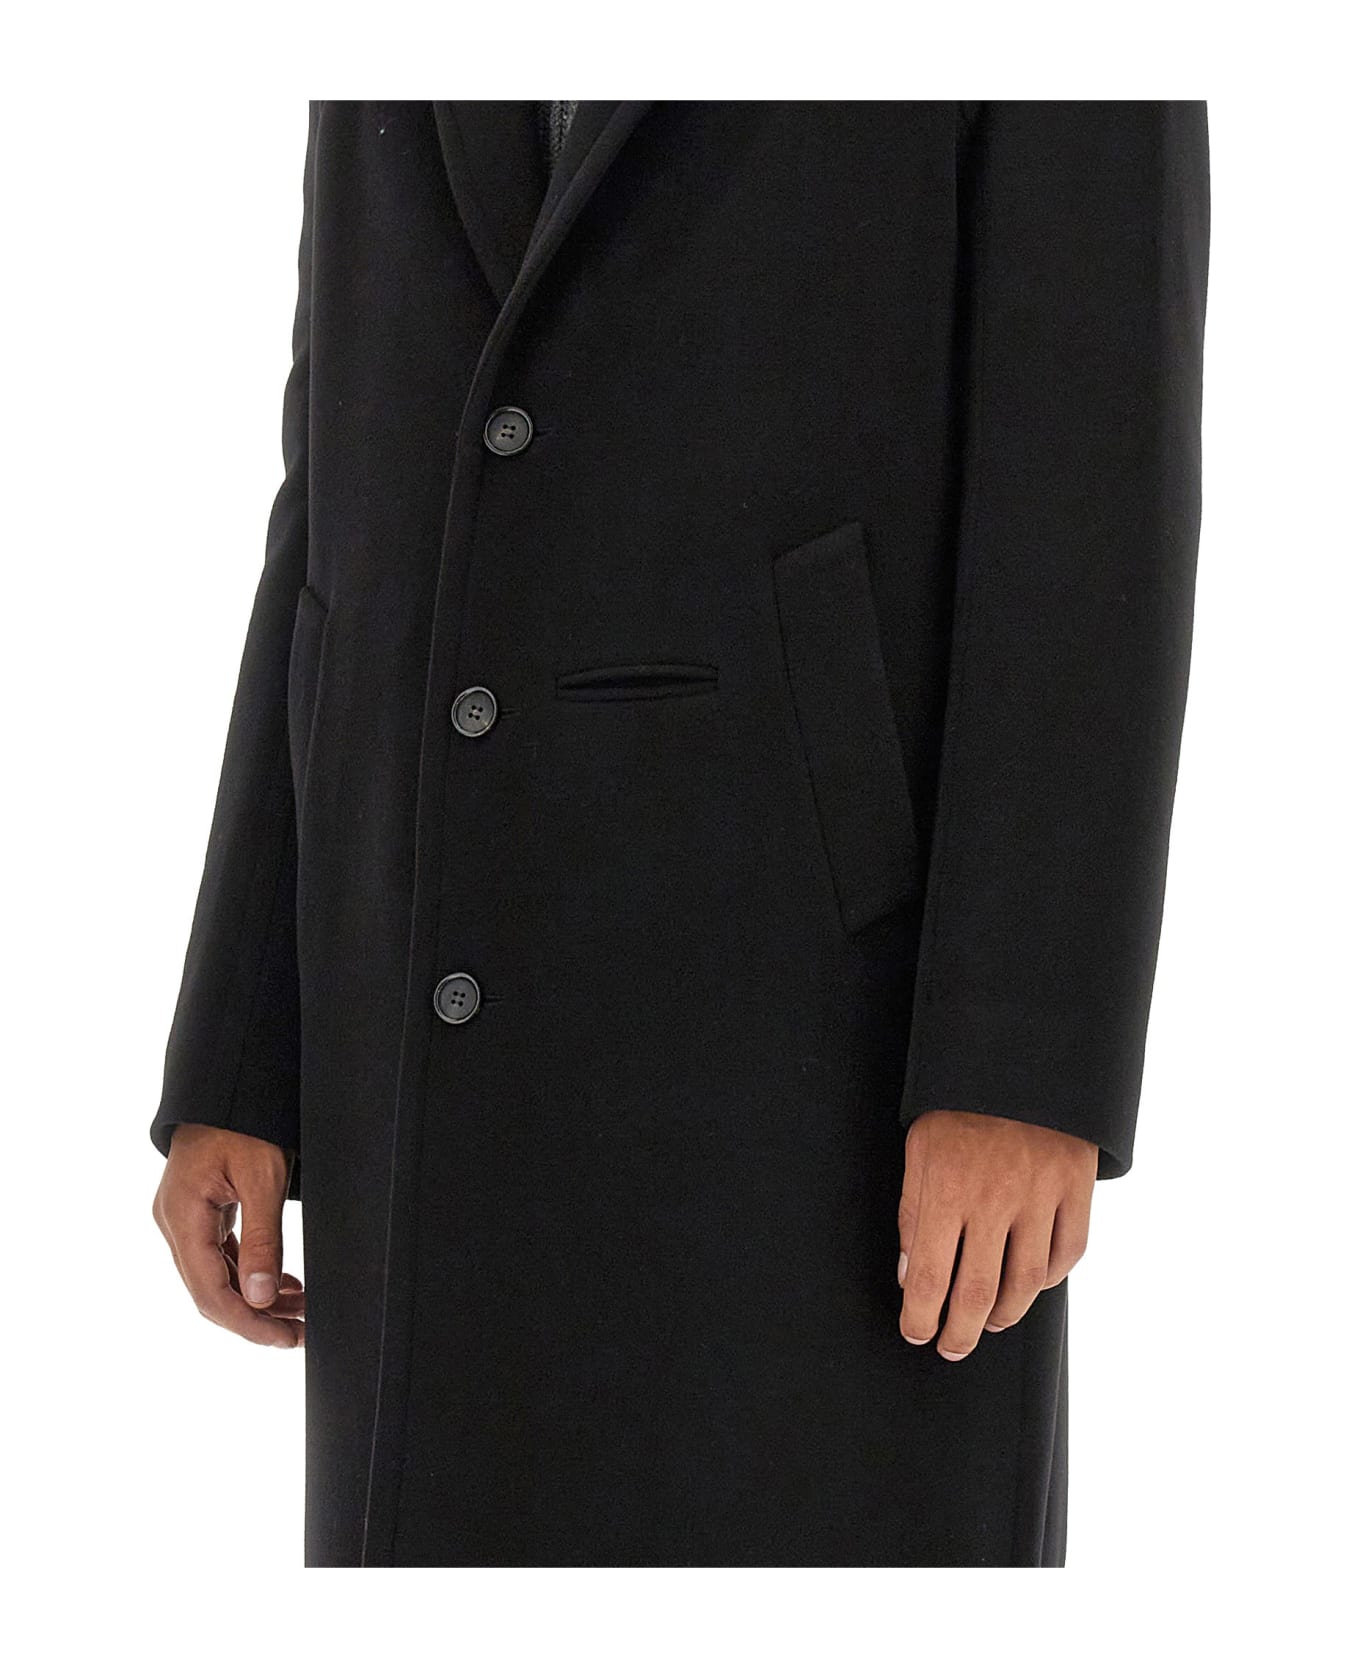 Alexander McQueen Single-breasted Coat - Black コート